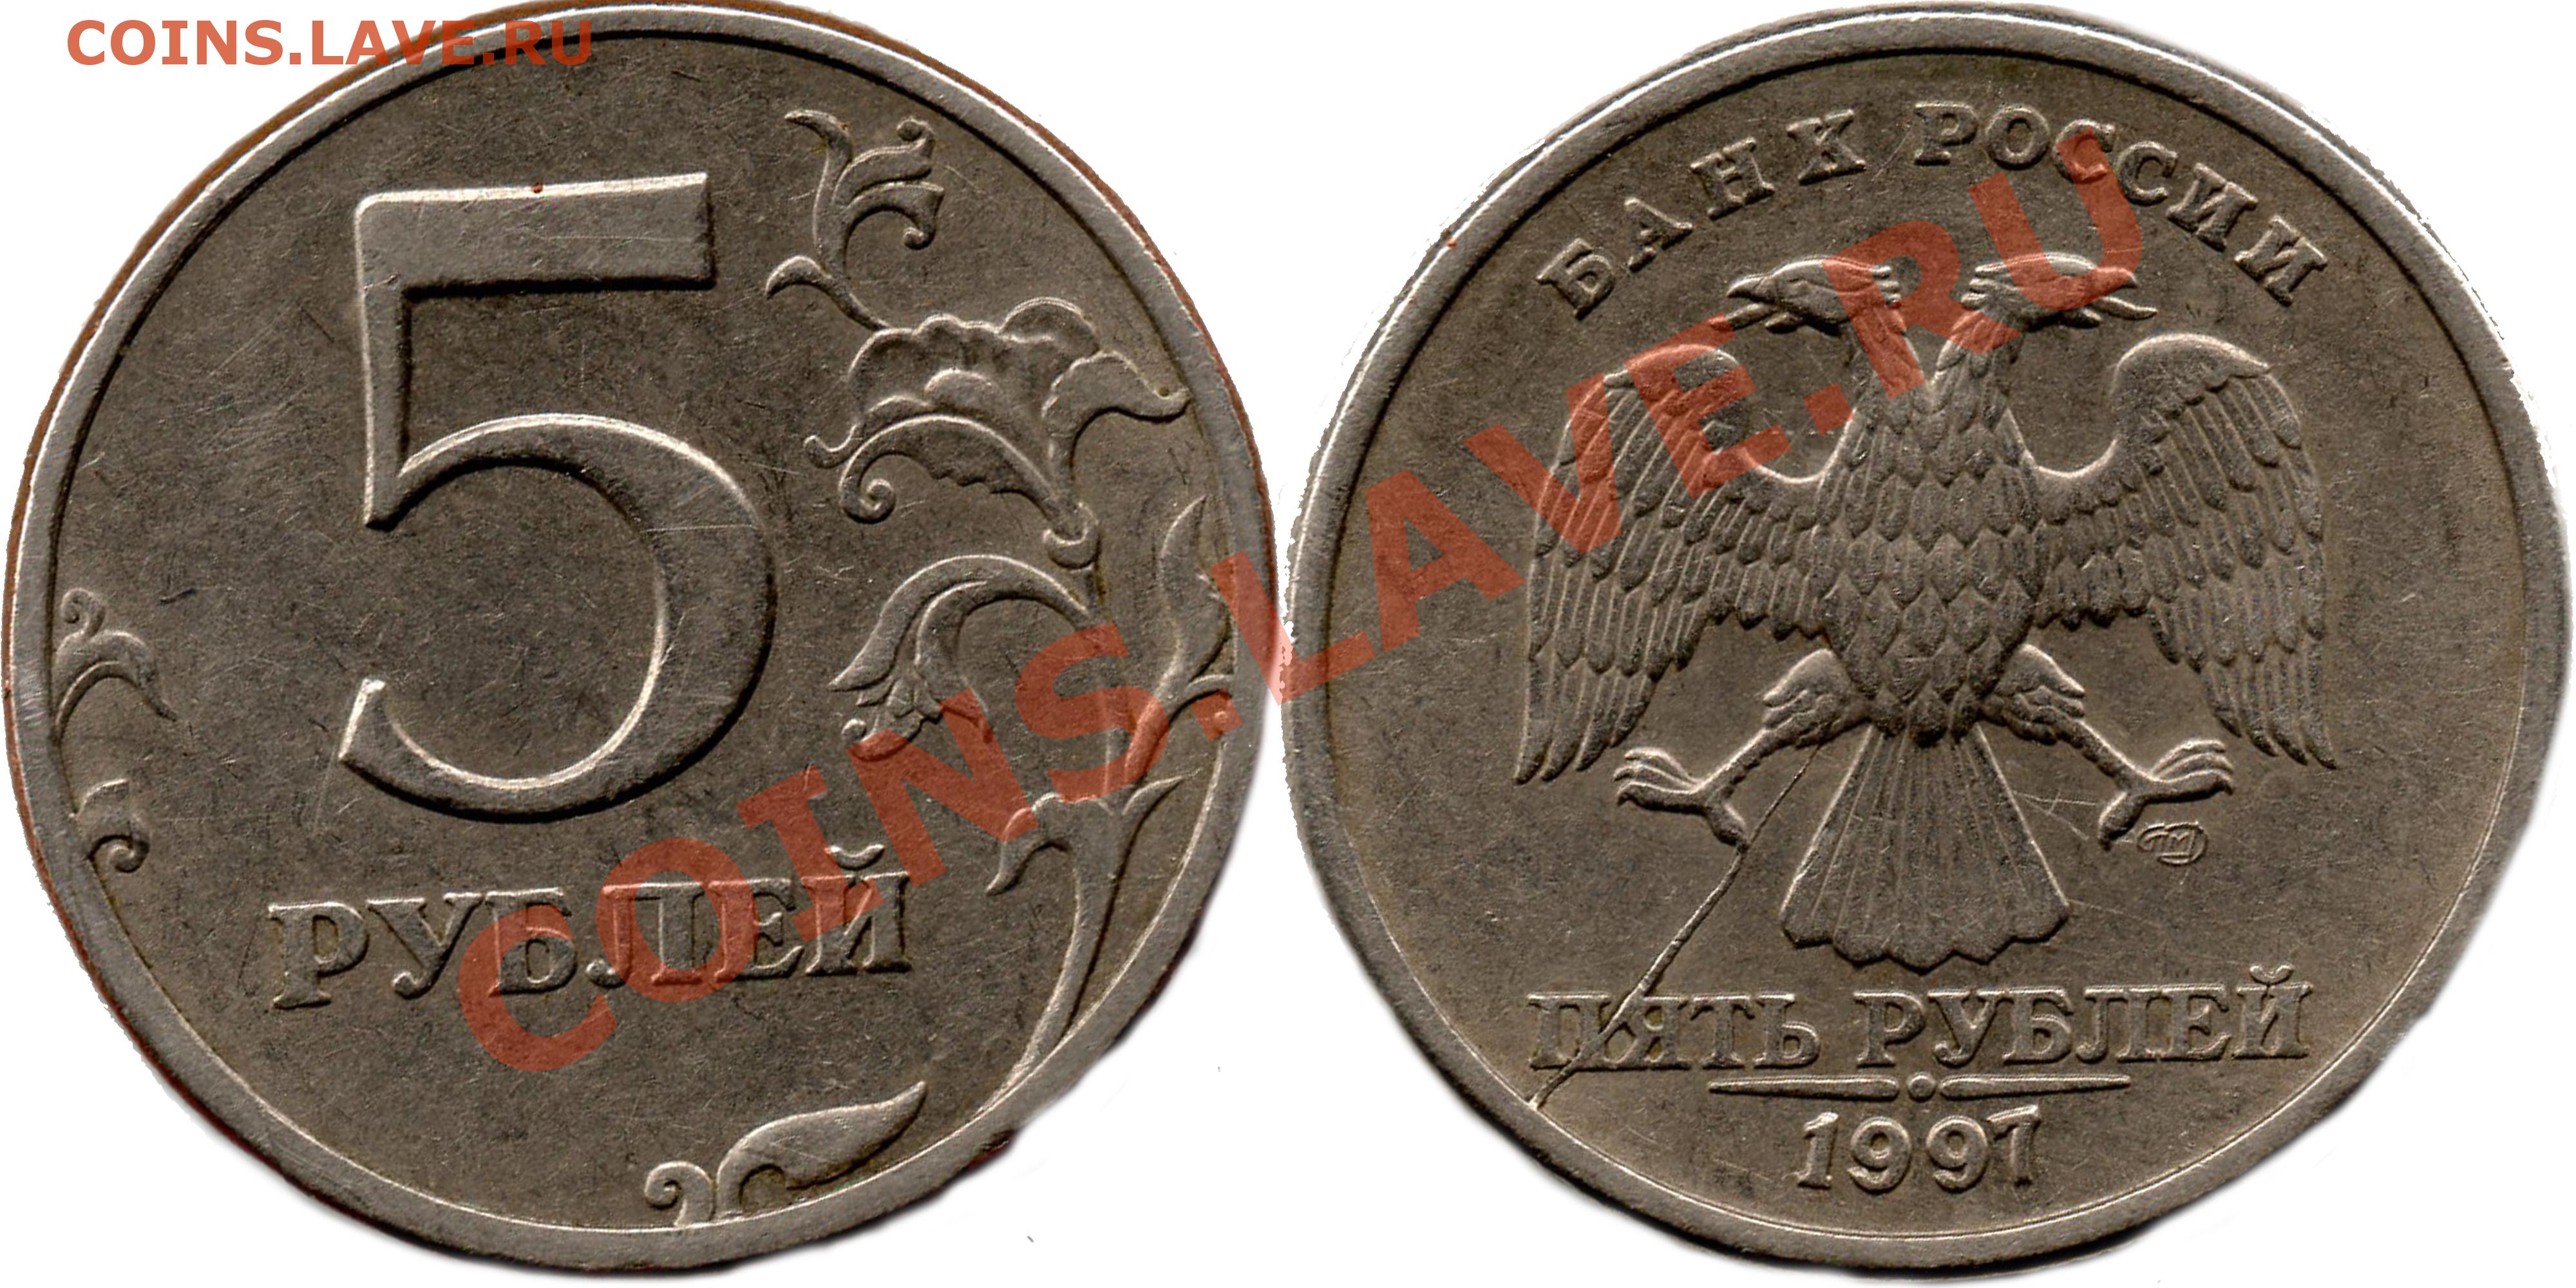 35 рублей россии. 5 Рублей 1997 раскол. 5 Рублей 1997. 5 Рублей 1997 года. 5 Т рублей 1997 года.